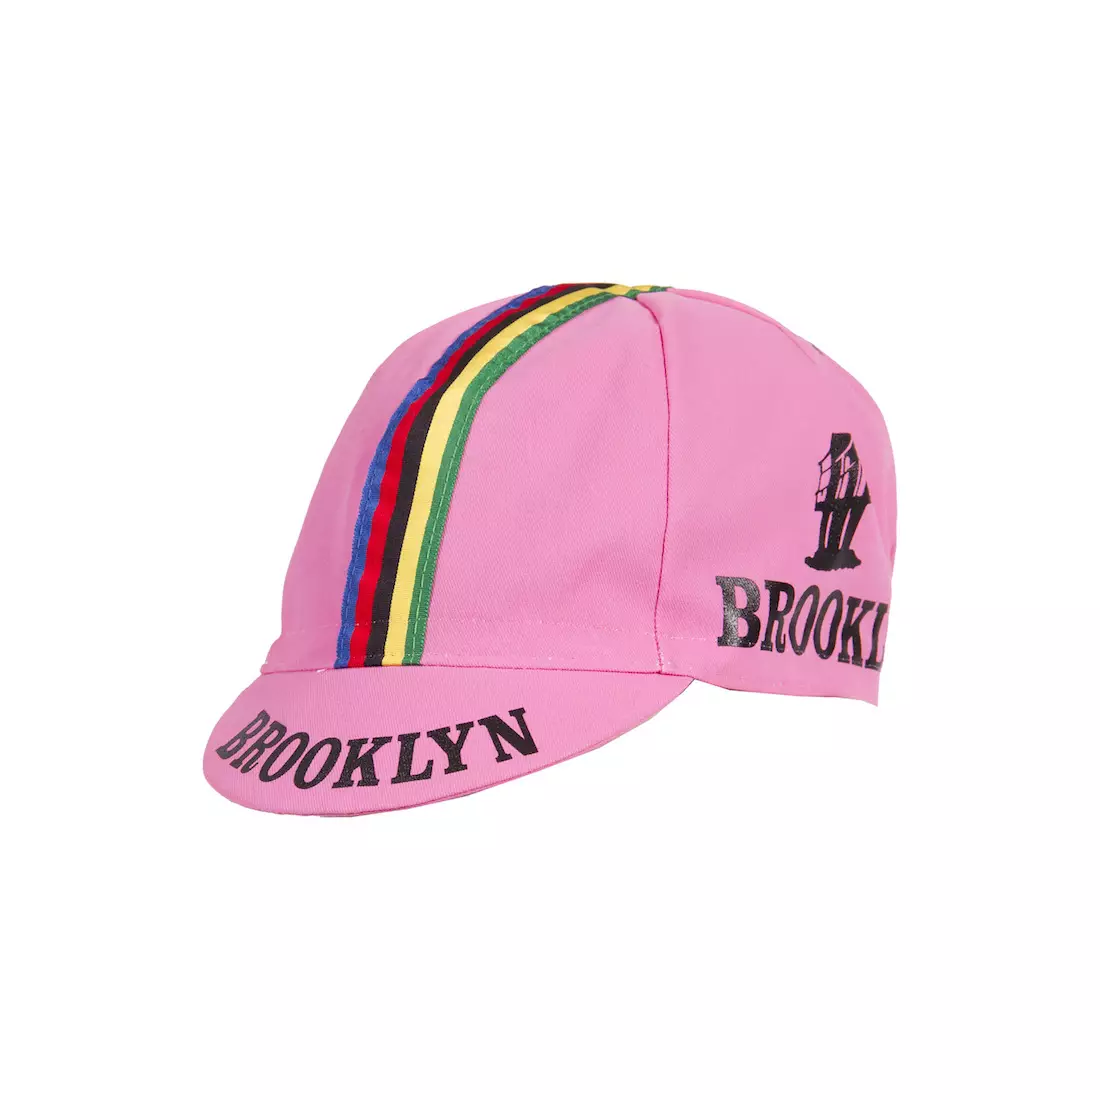 GIORDANA SS18 kerékpáros sapka - Brooklyn - Giro Pink csíkos szalaggal GI-S6-COCA-BROK-GIRO egy méret